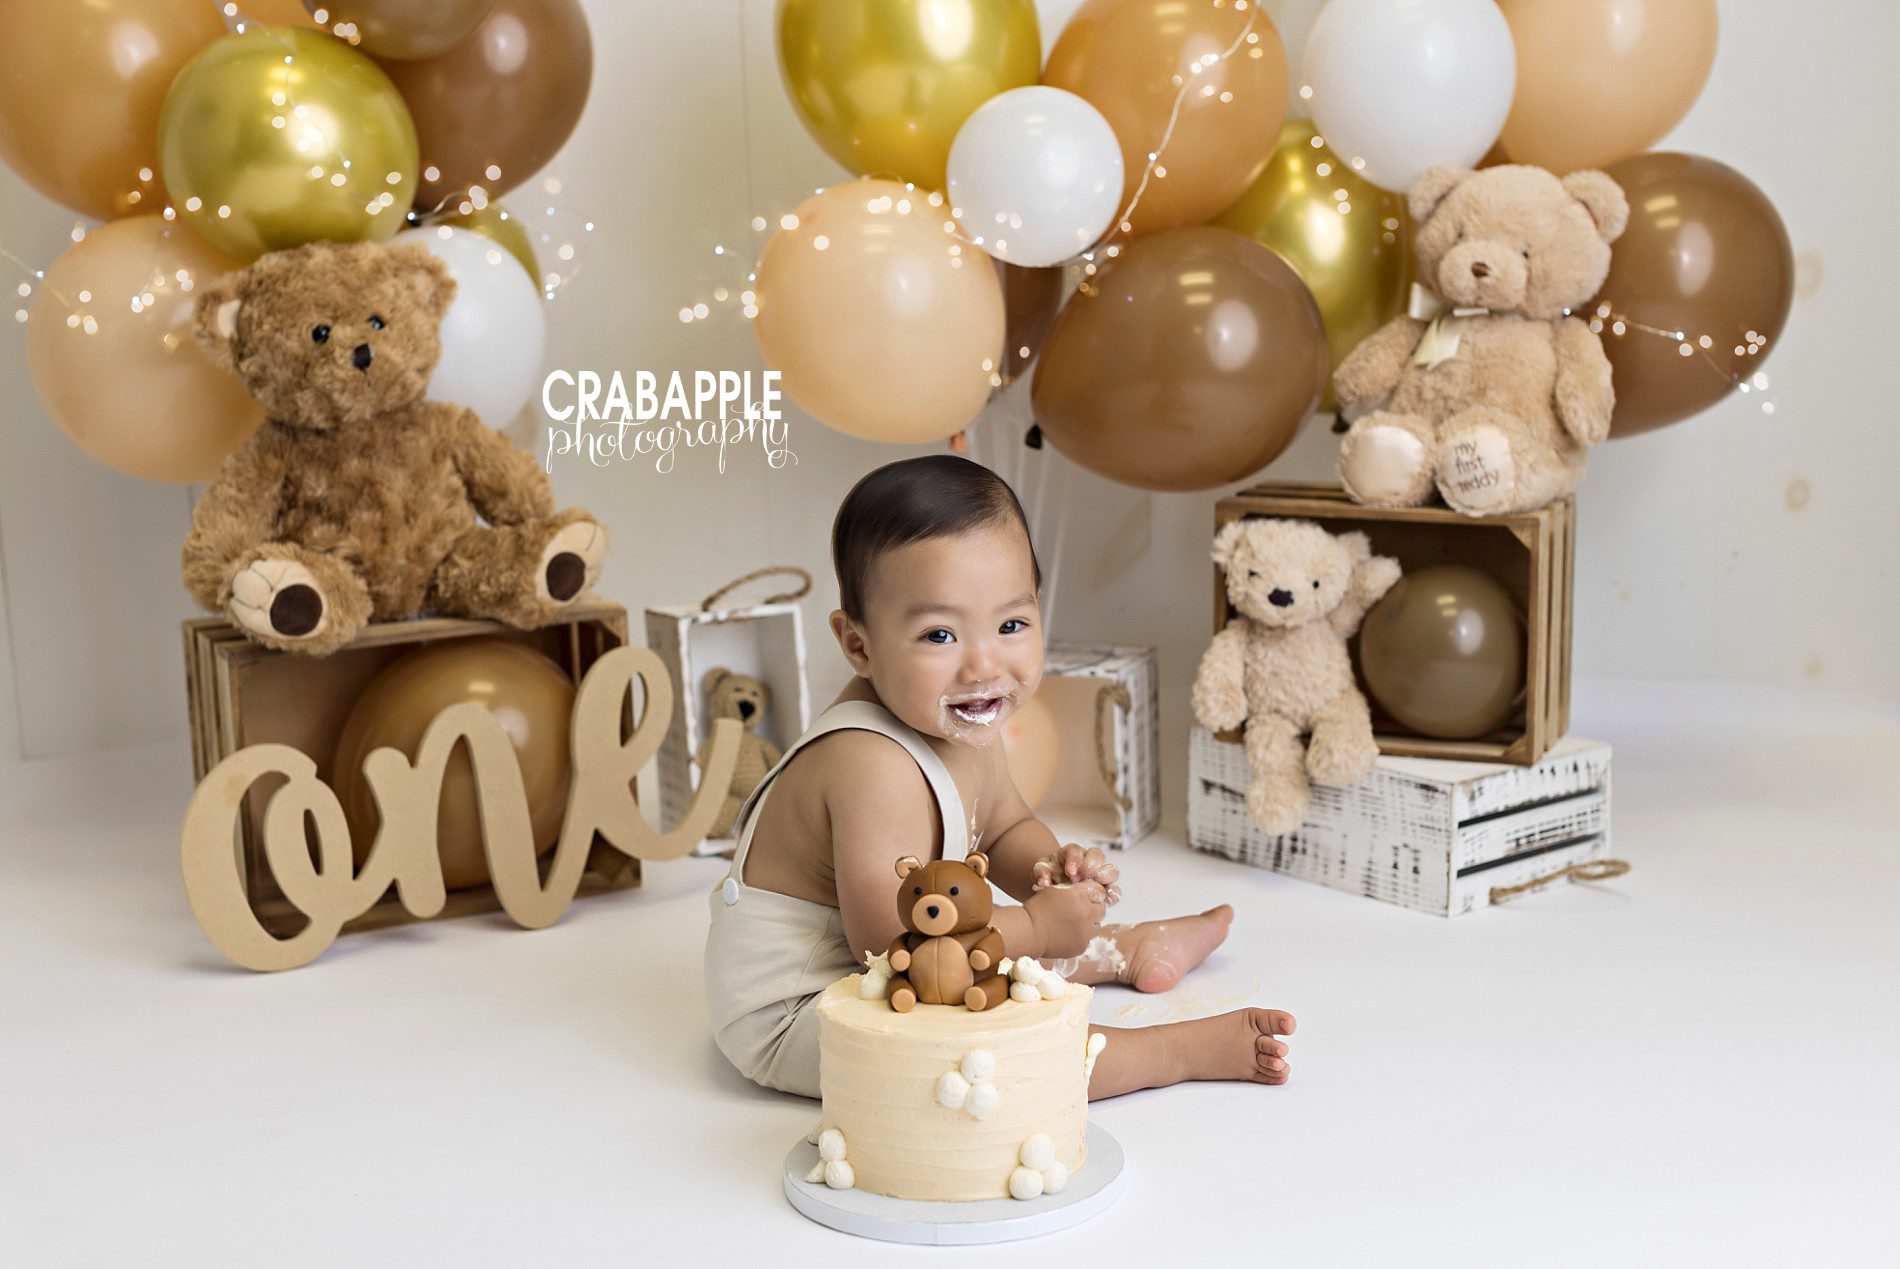 ideas for cake smash photos with teddy bears